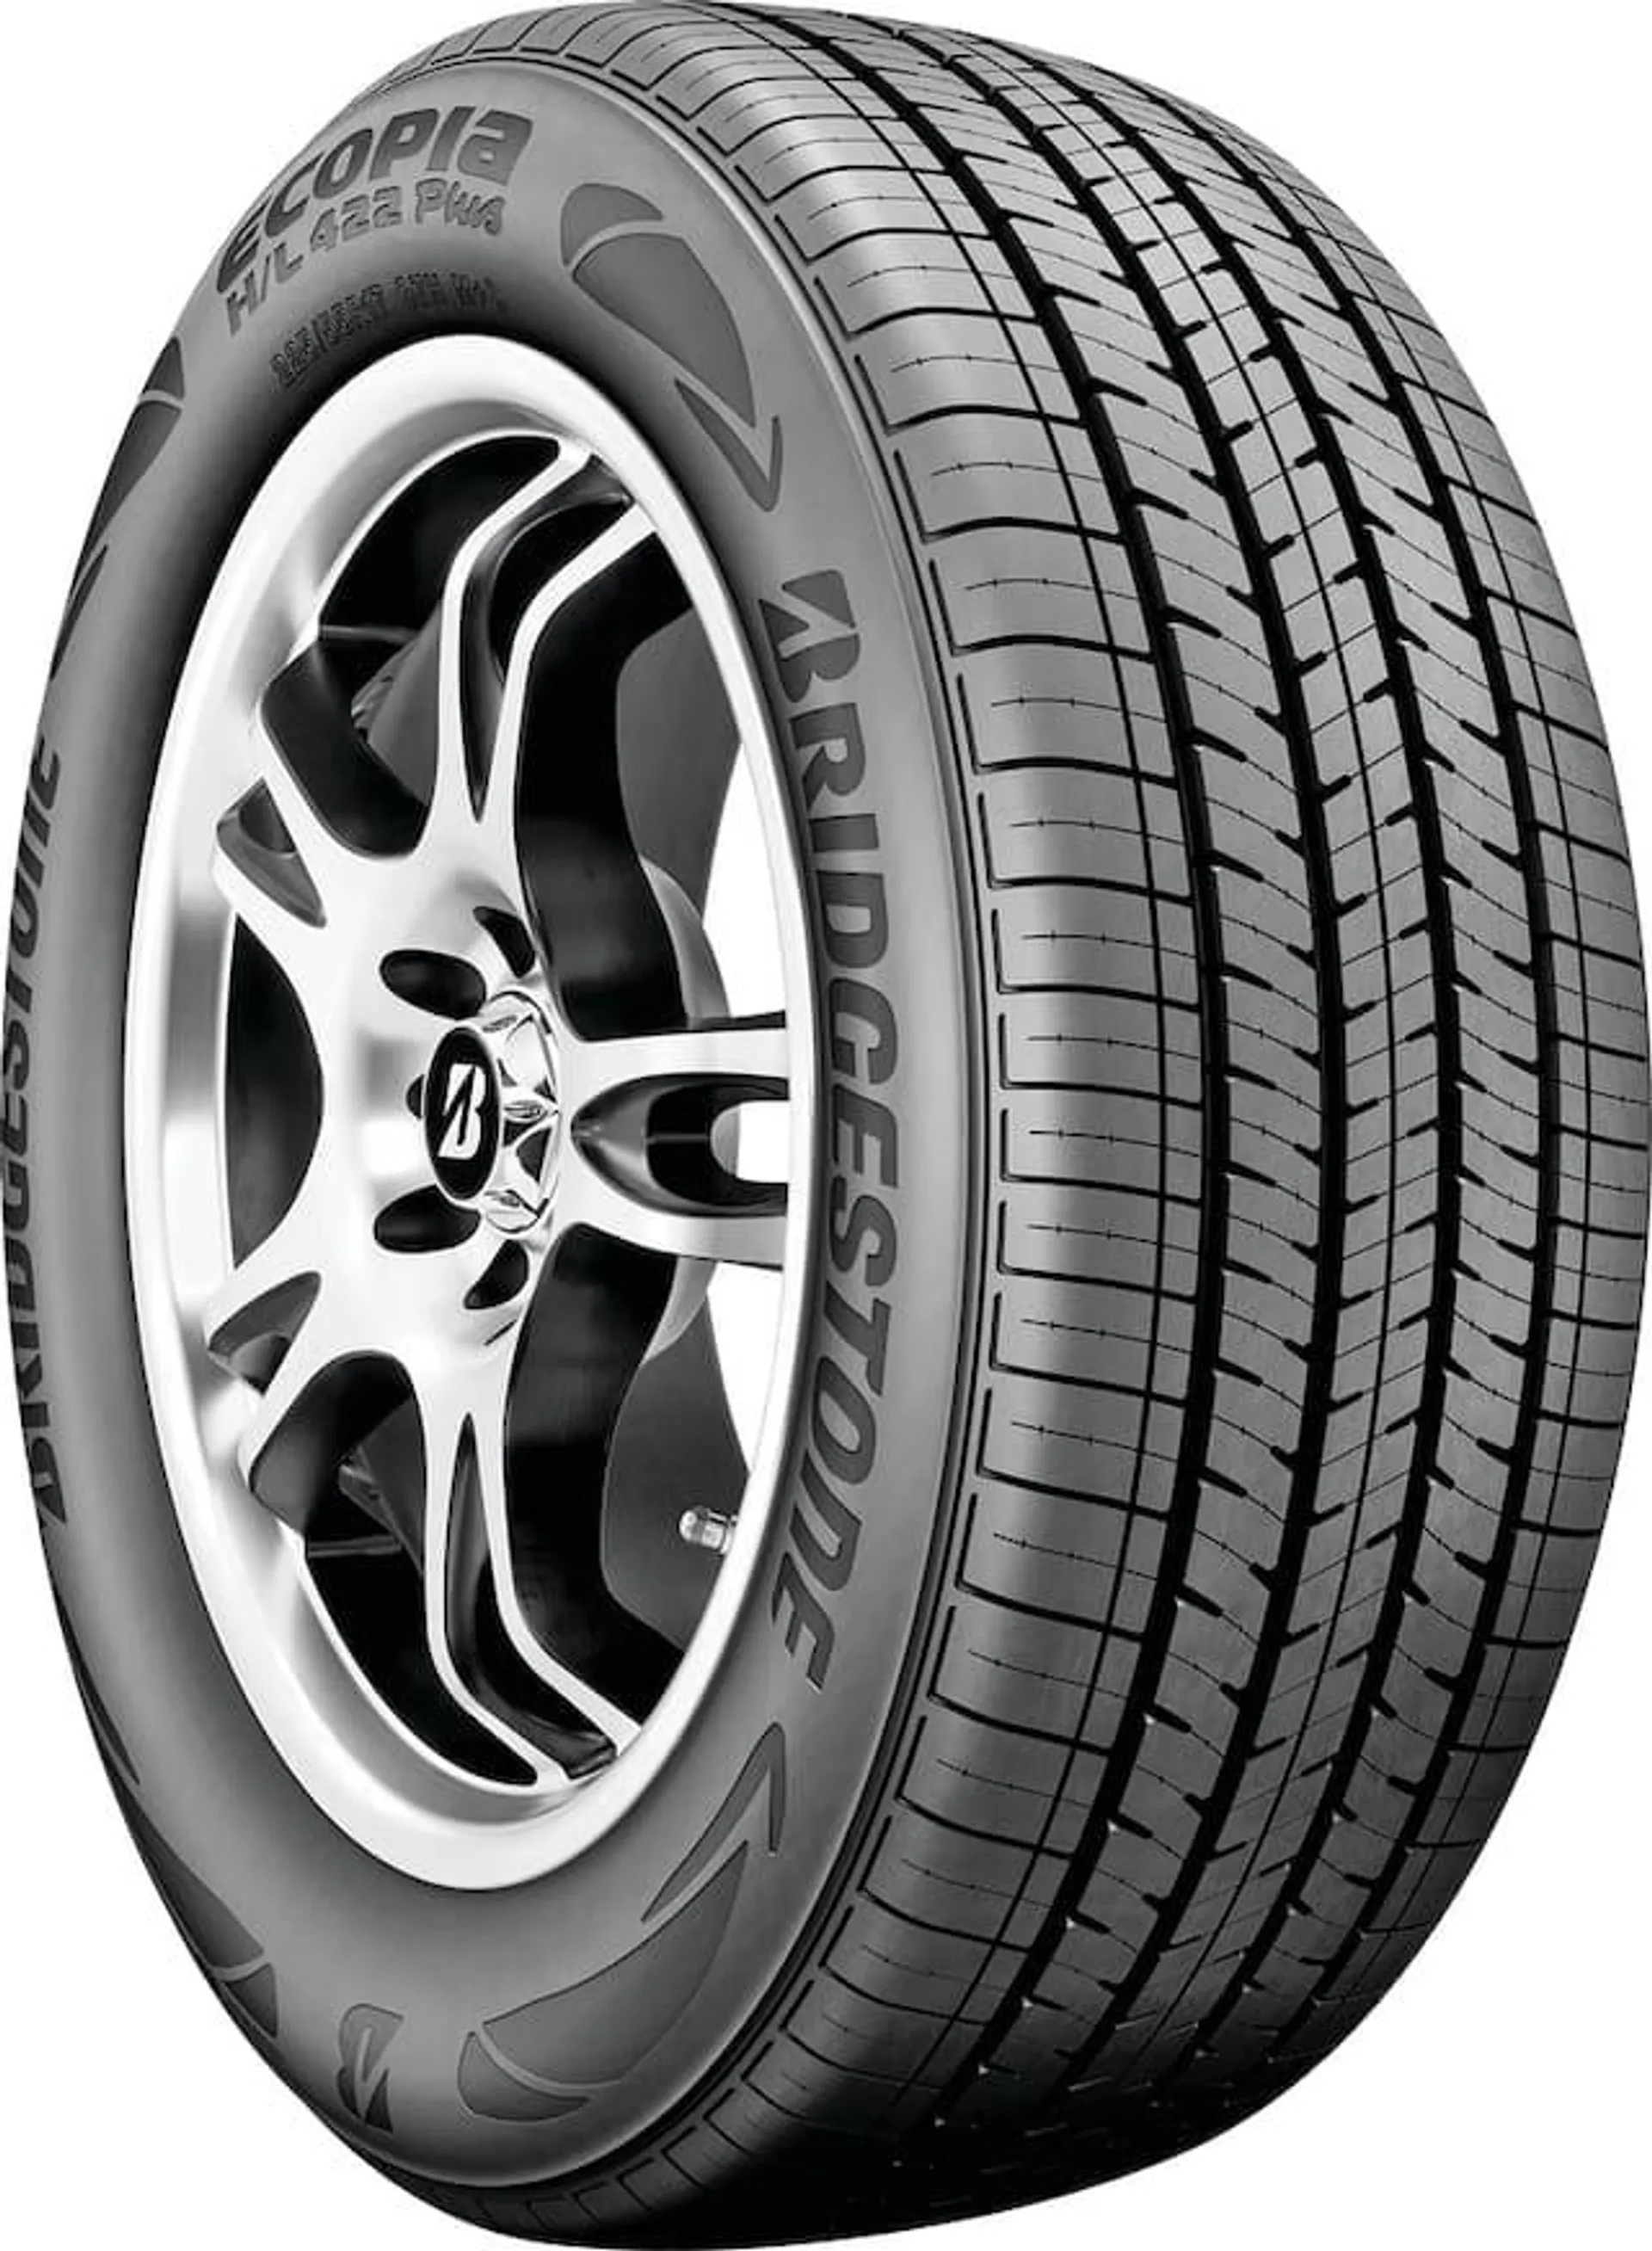 Bridgestone Ecopia H/L 422 Plus All Season Tire For Passenger & CUV